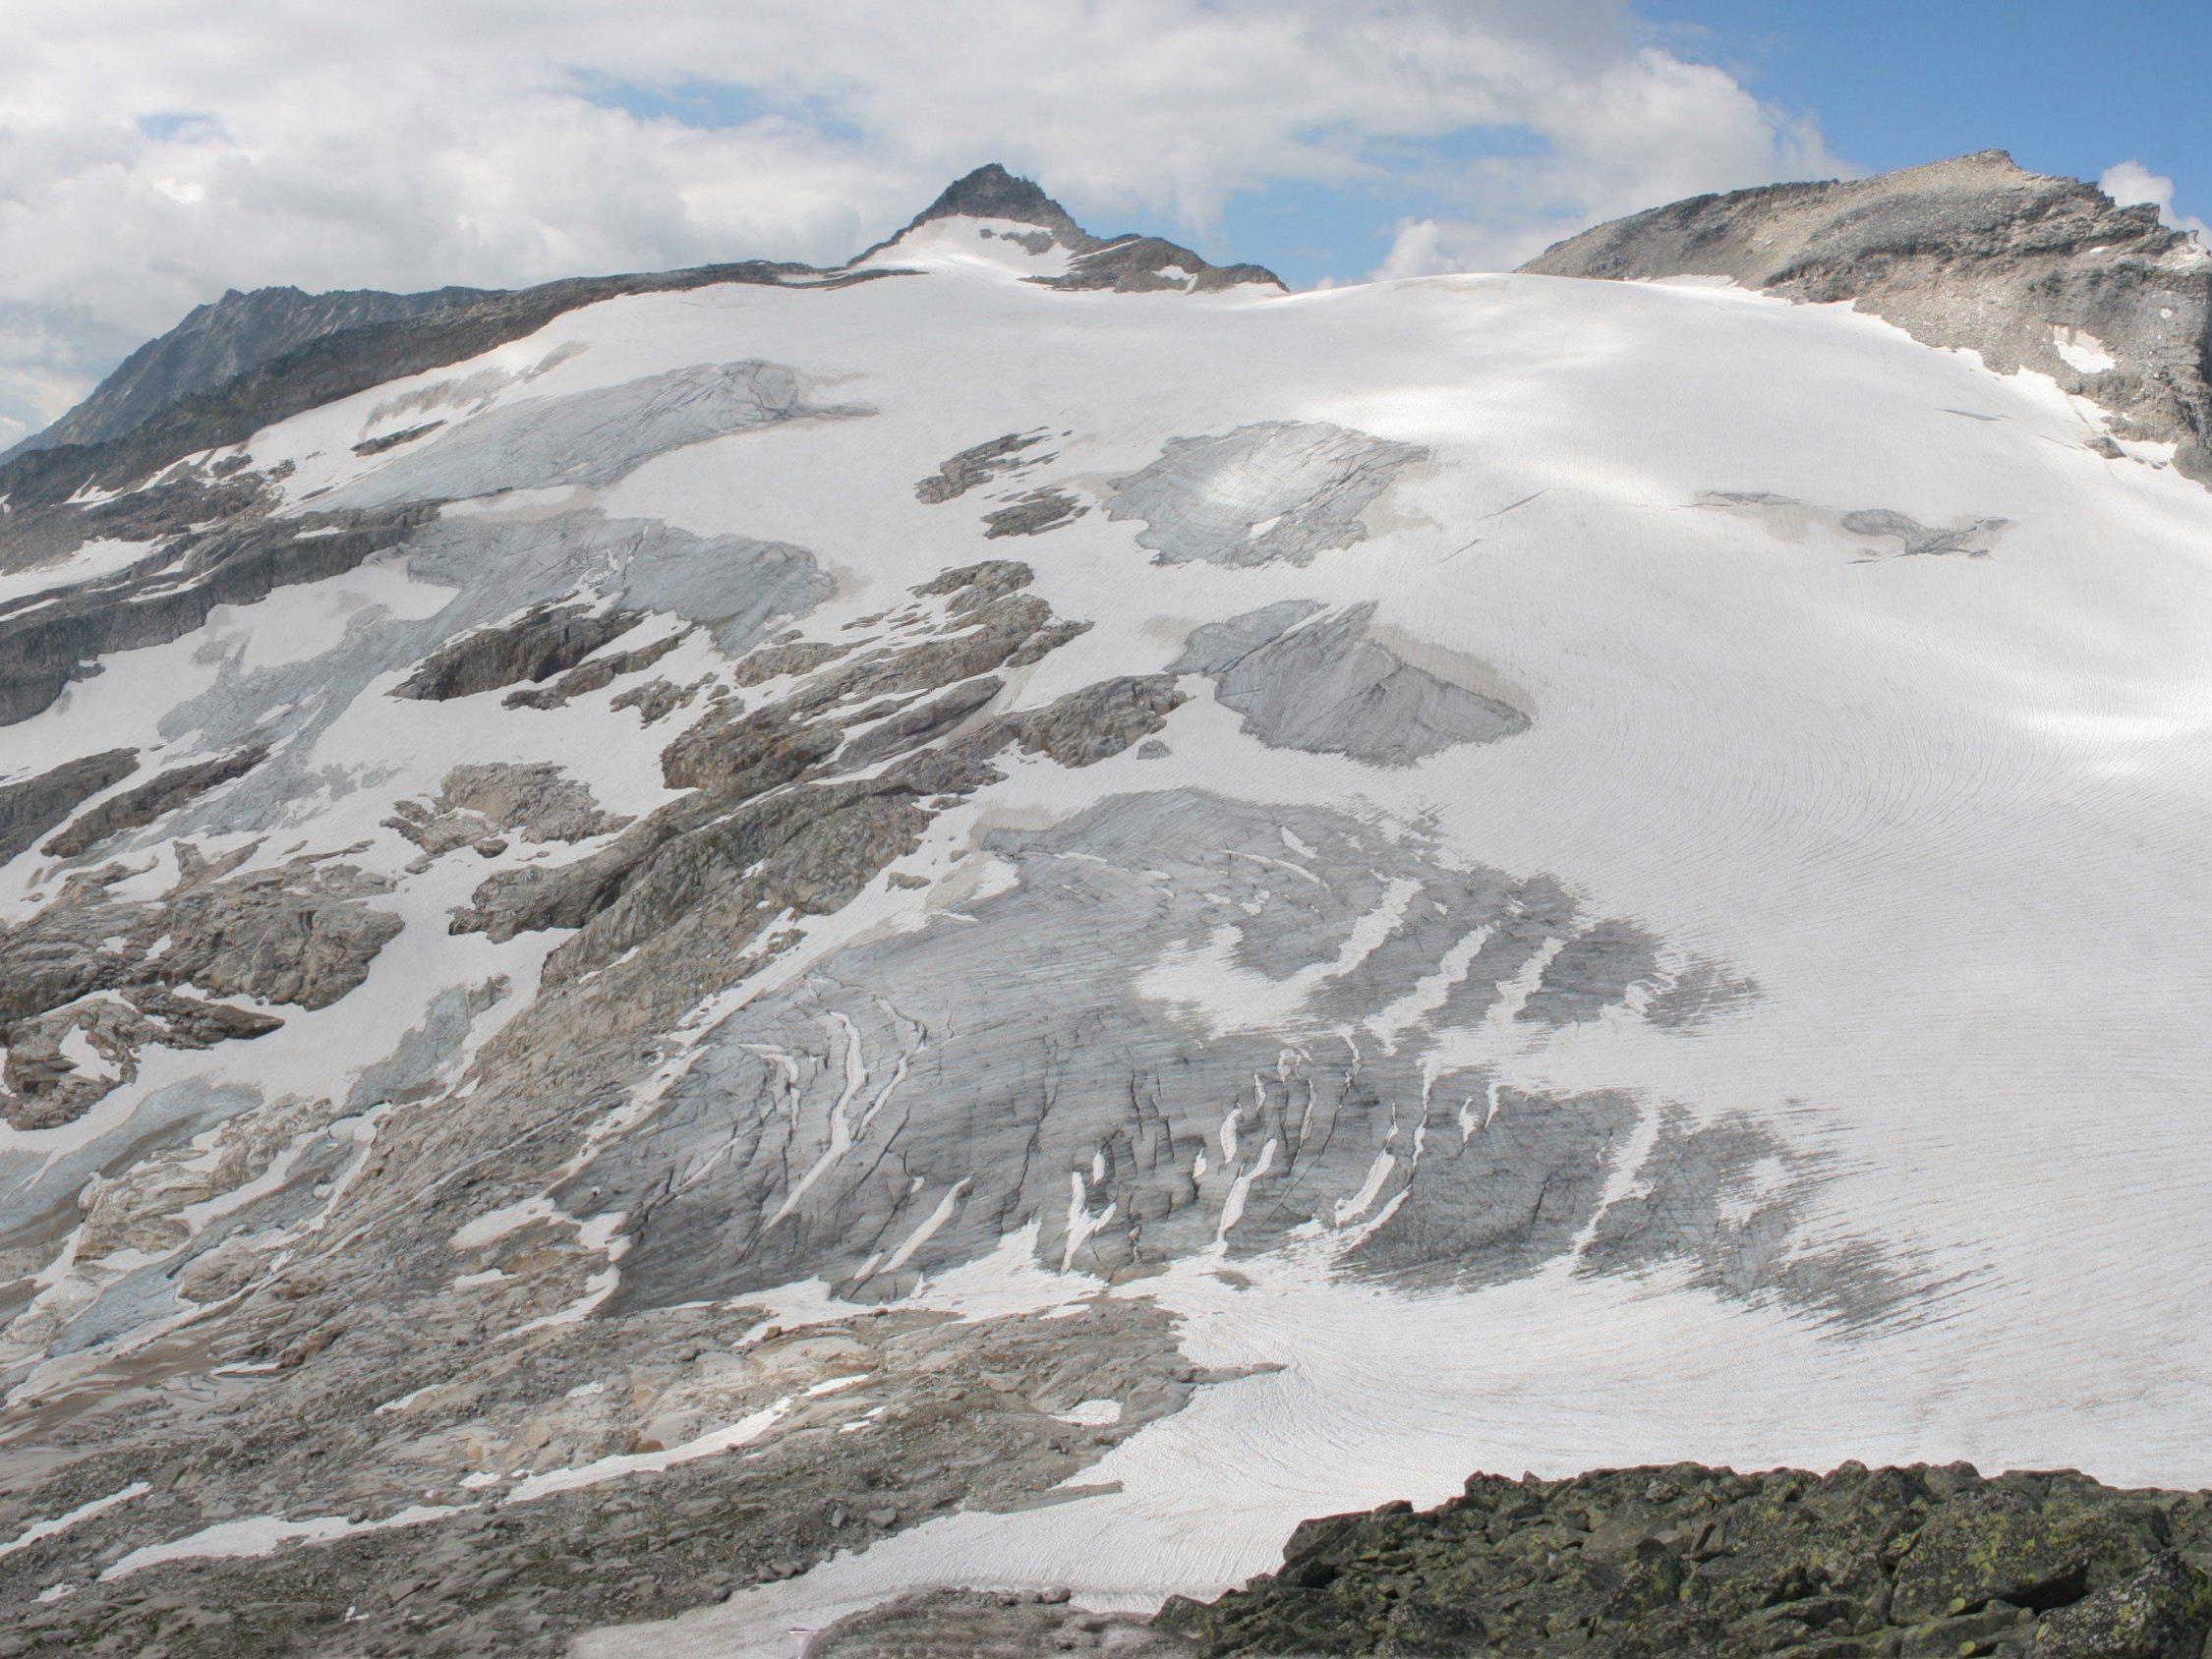 Aktuelle Panoramaaufnahme (Blickrichtung Süden) von einem Vorgipfel des Hochfillecks mit Blick auf Stubacher Sonnblick (rechts) und Granatspitze Gletscherschmelze.